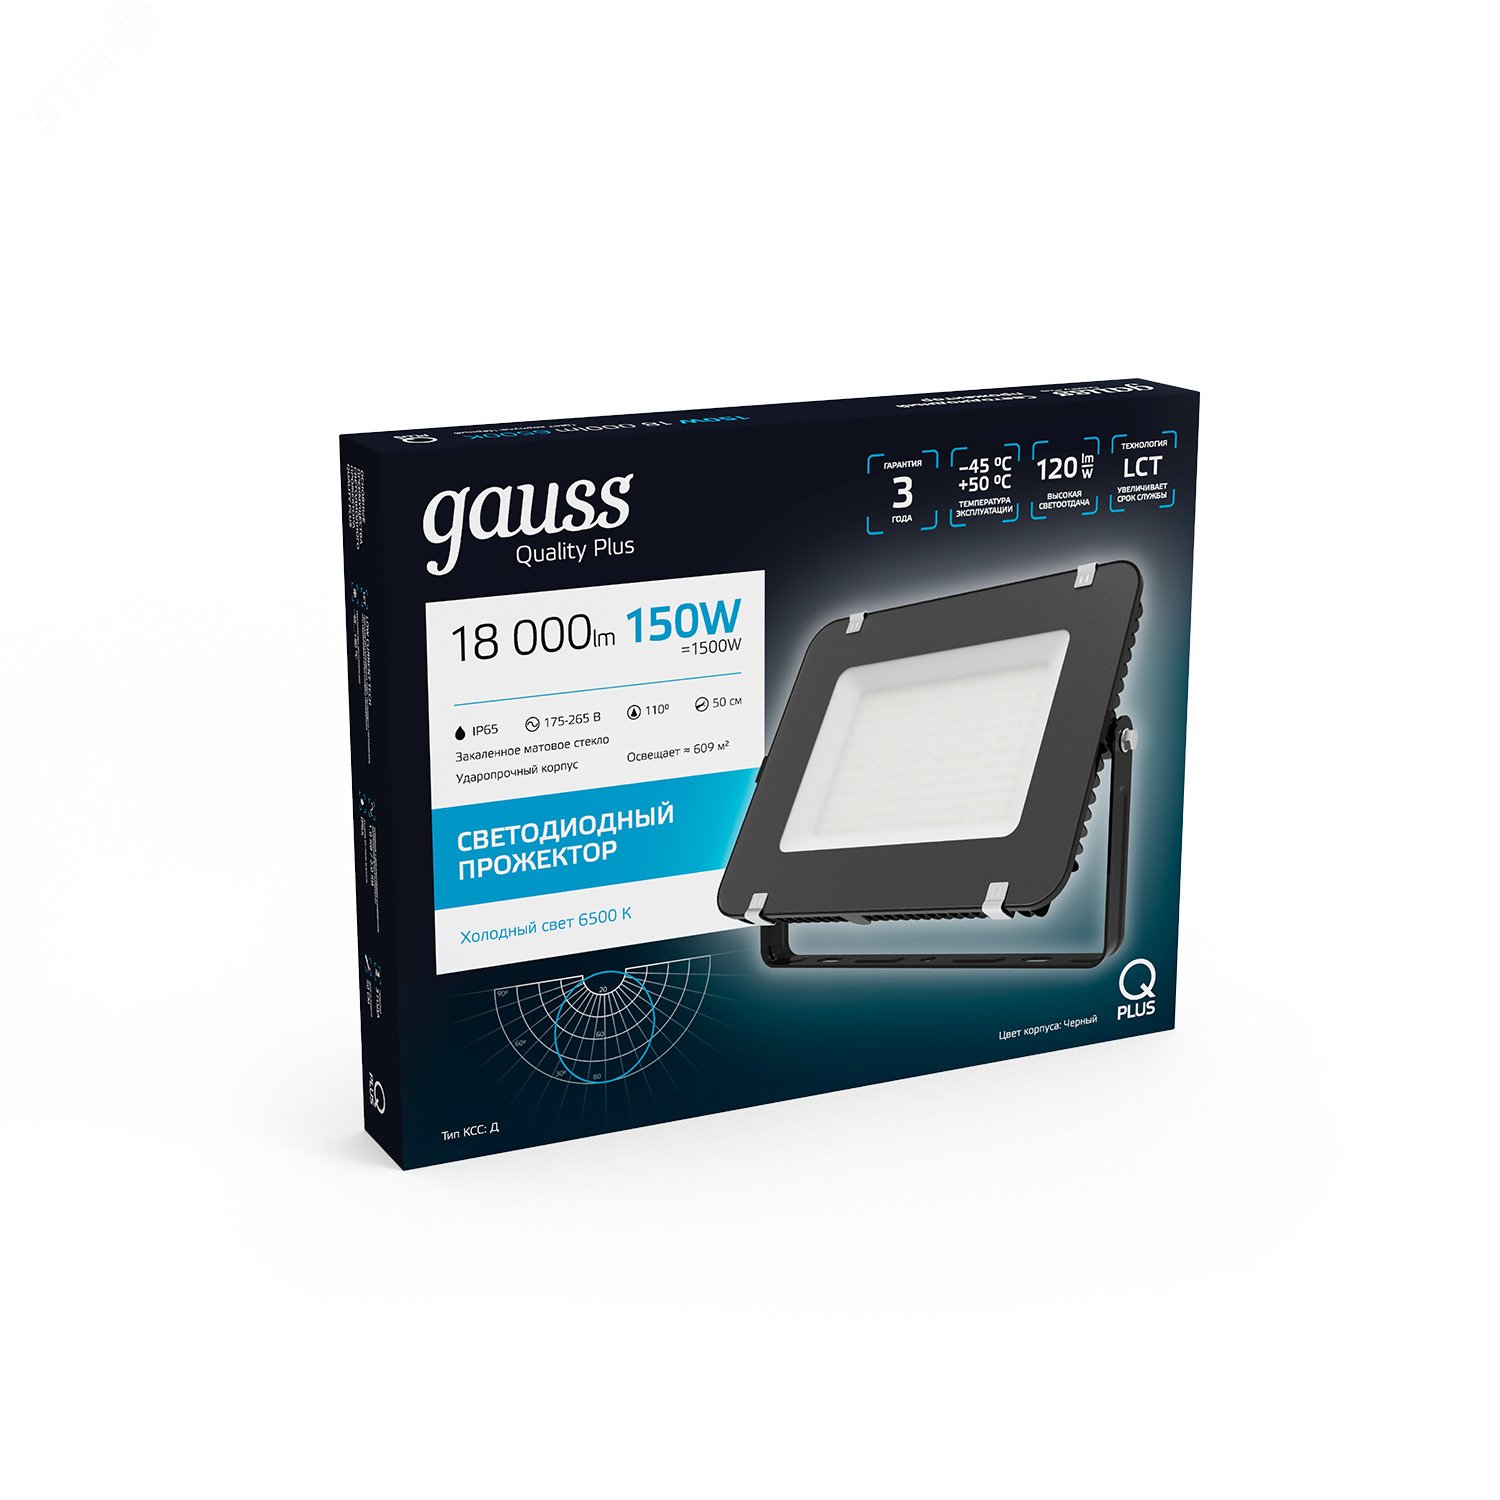 Прожектор Gauss Qplus 150W 18000lm 6500K 175-265V IP65 черный LED 1/4 613100150 GAUSS - превью 5